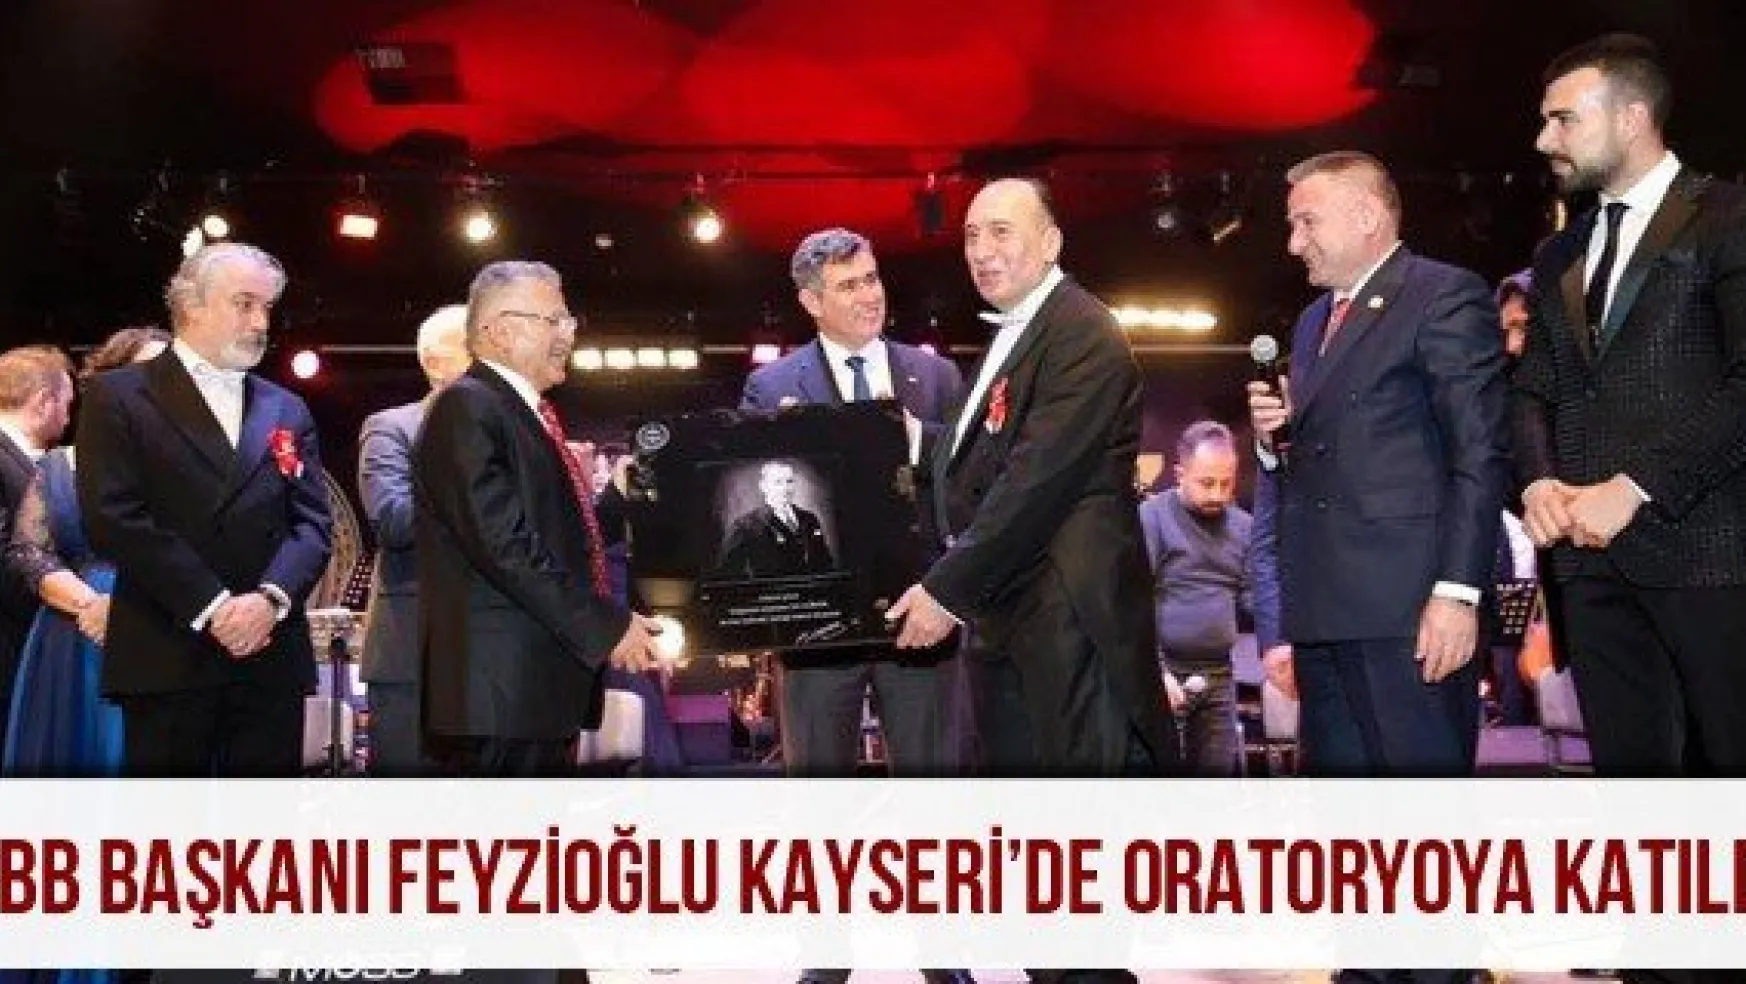 TBB Başkanı Feyzioğlu Kayseri'de oratoryoya katıldı